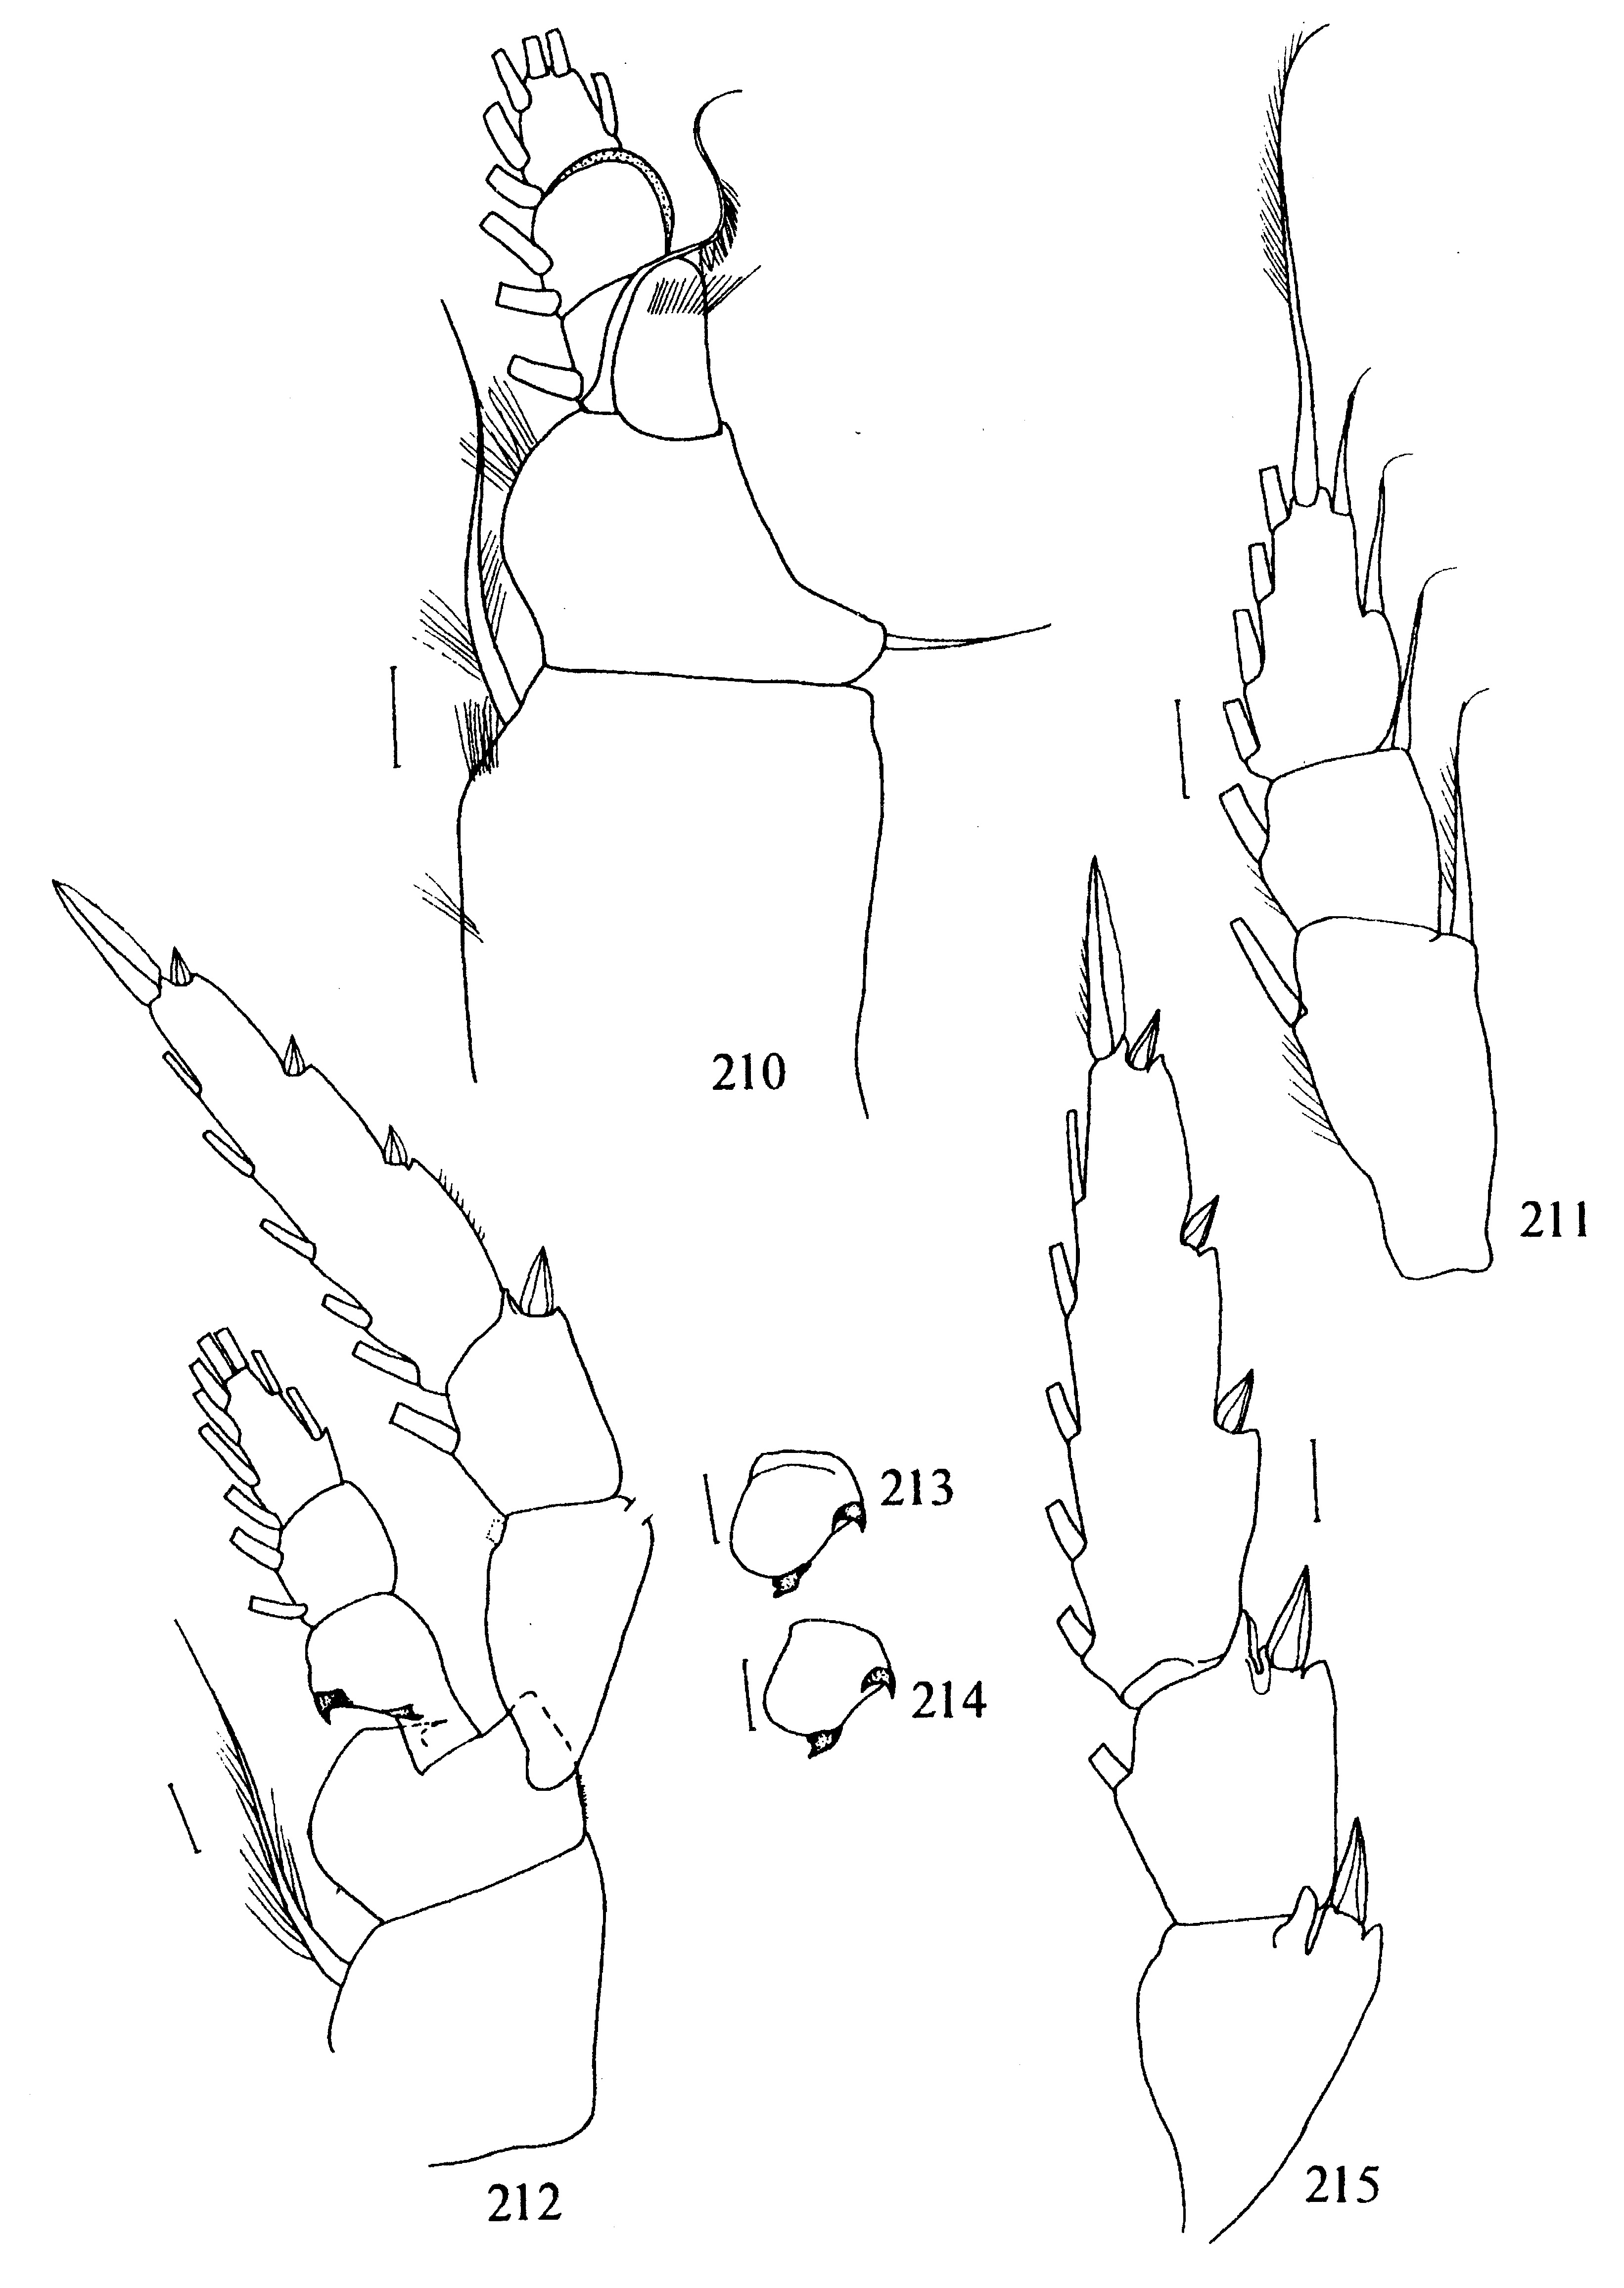 Species Metridia ornata - Plate 5 of morphological figures